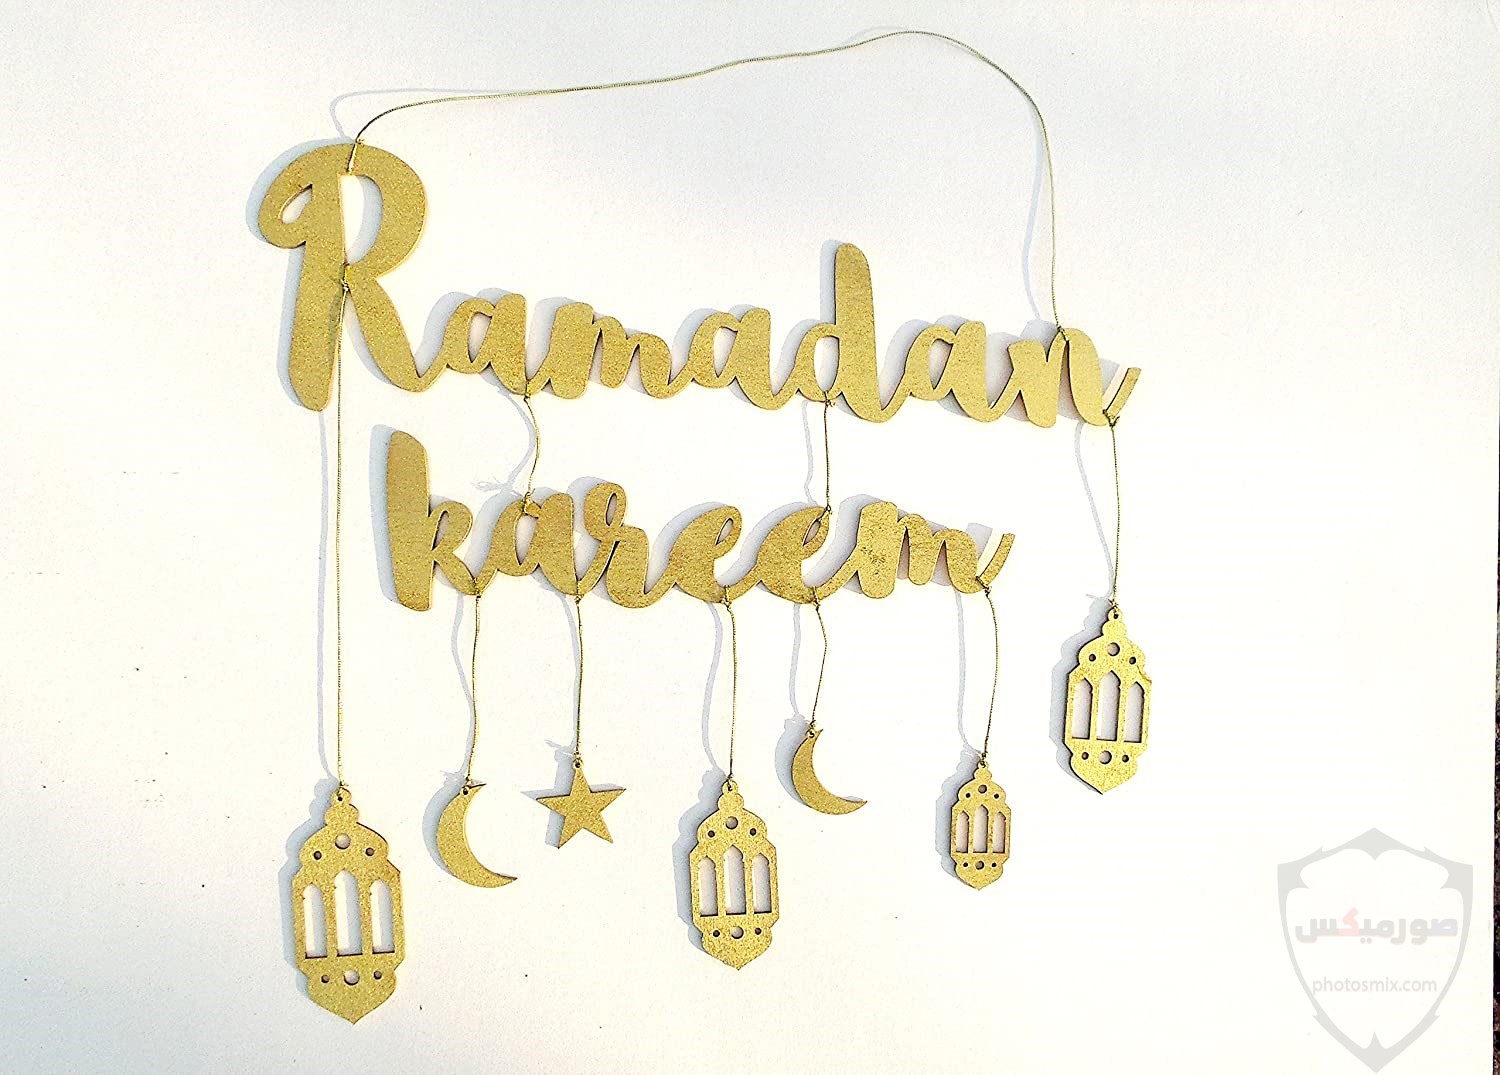 دعاء رمضان 2020 الادعية الرمضان فى 2020 12